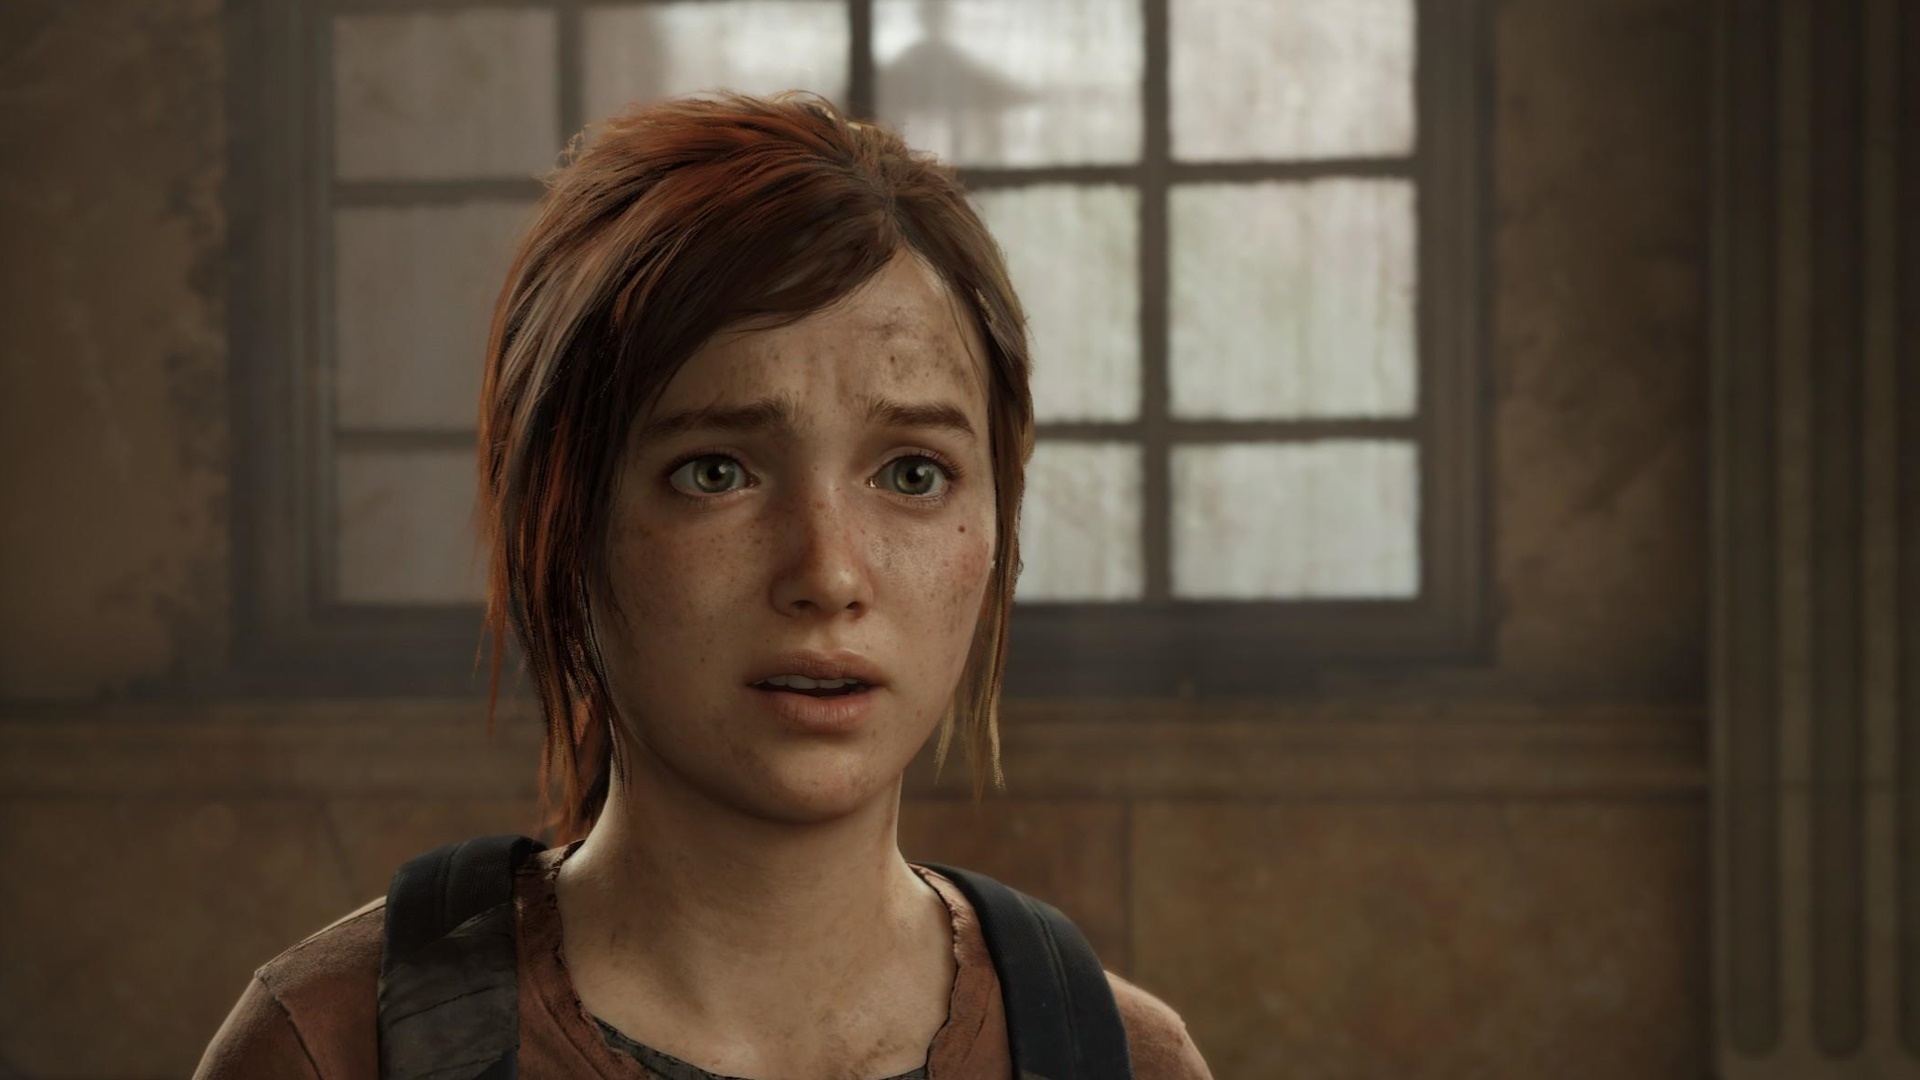 Multigiocatore di The Last of Us: questa è la schermata iniziale del gioco Naughty Dog a cui non giocheremo mai